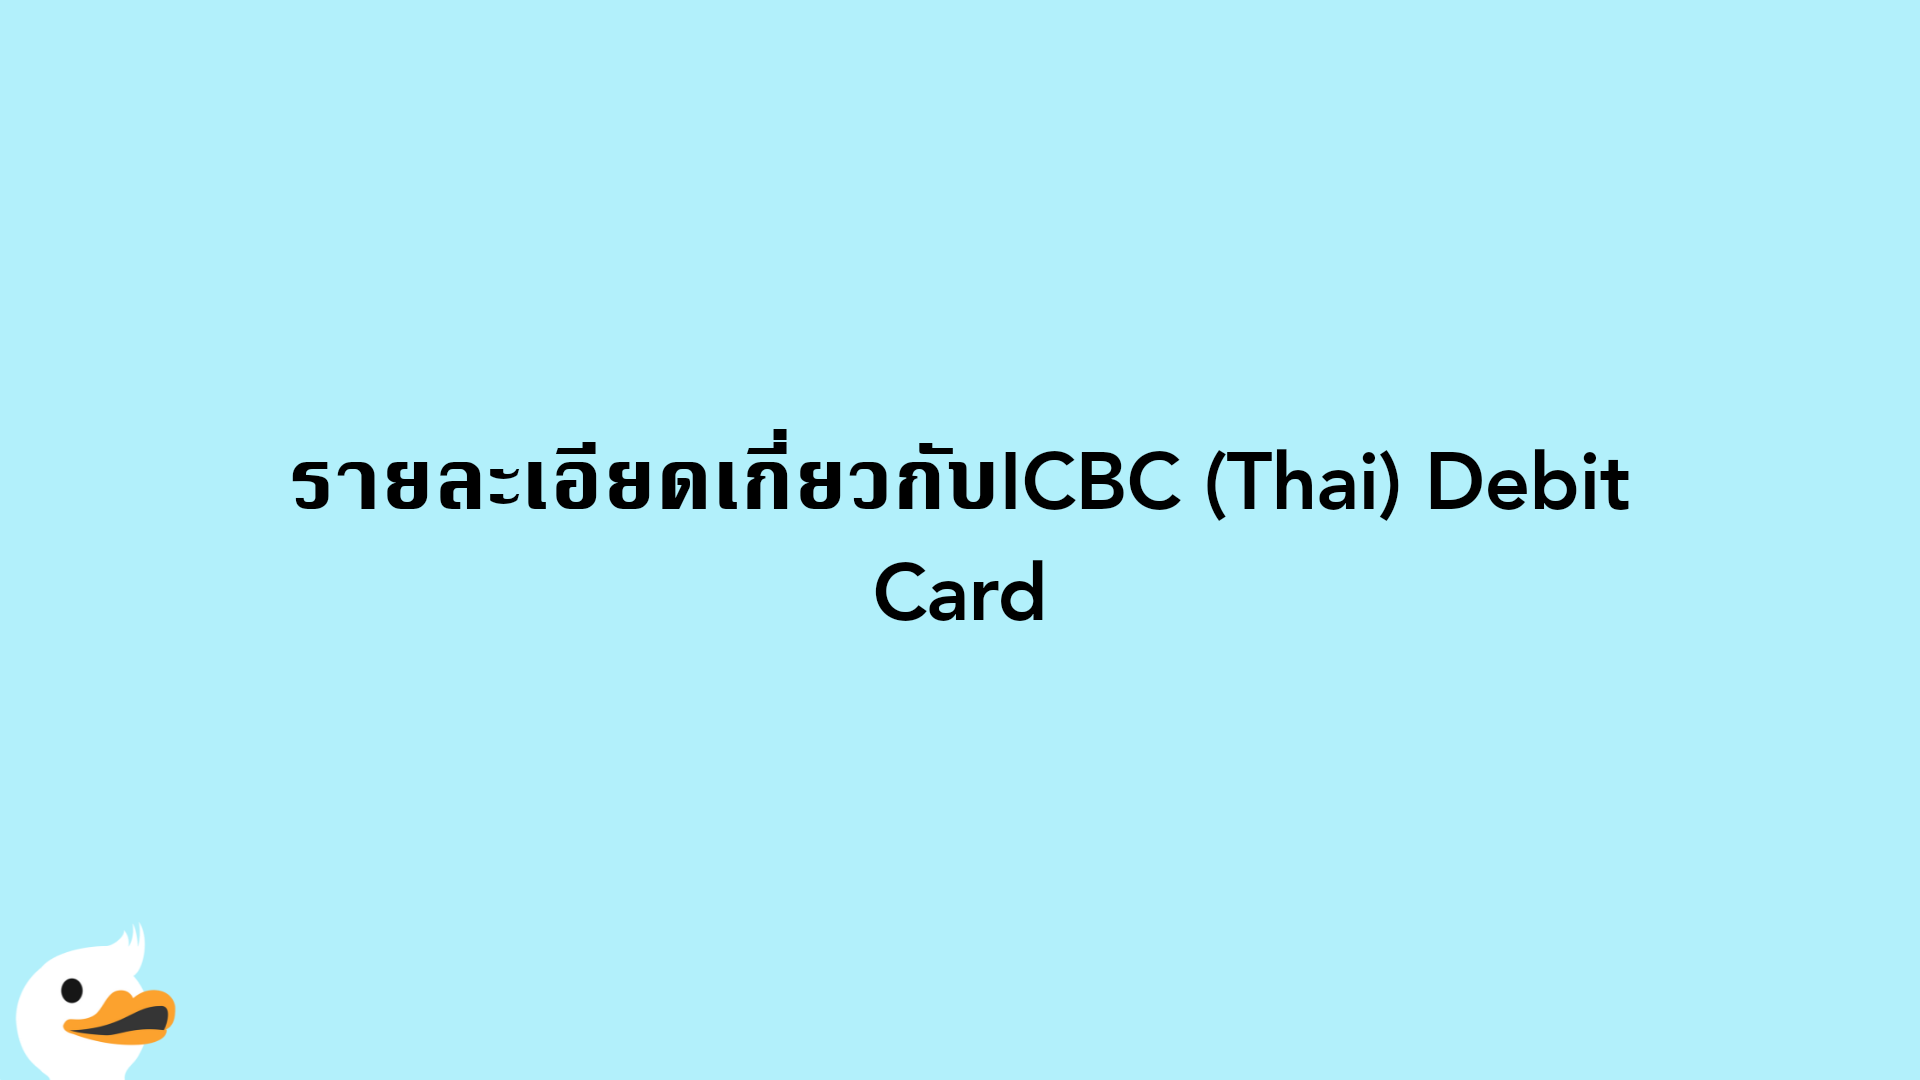 รายละเอียดเกี่ยวกับICBC (Thai) Debit Card